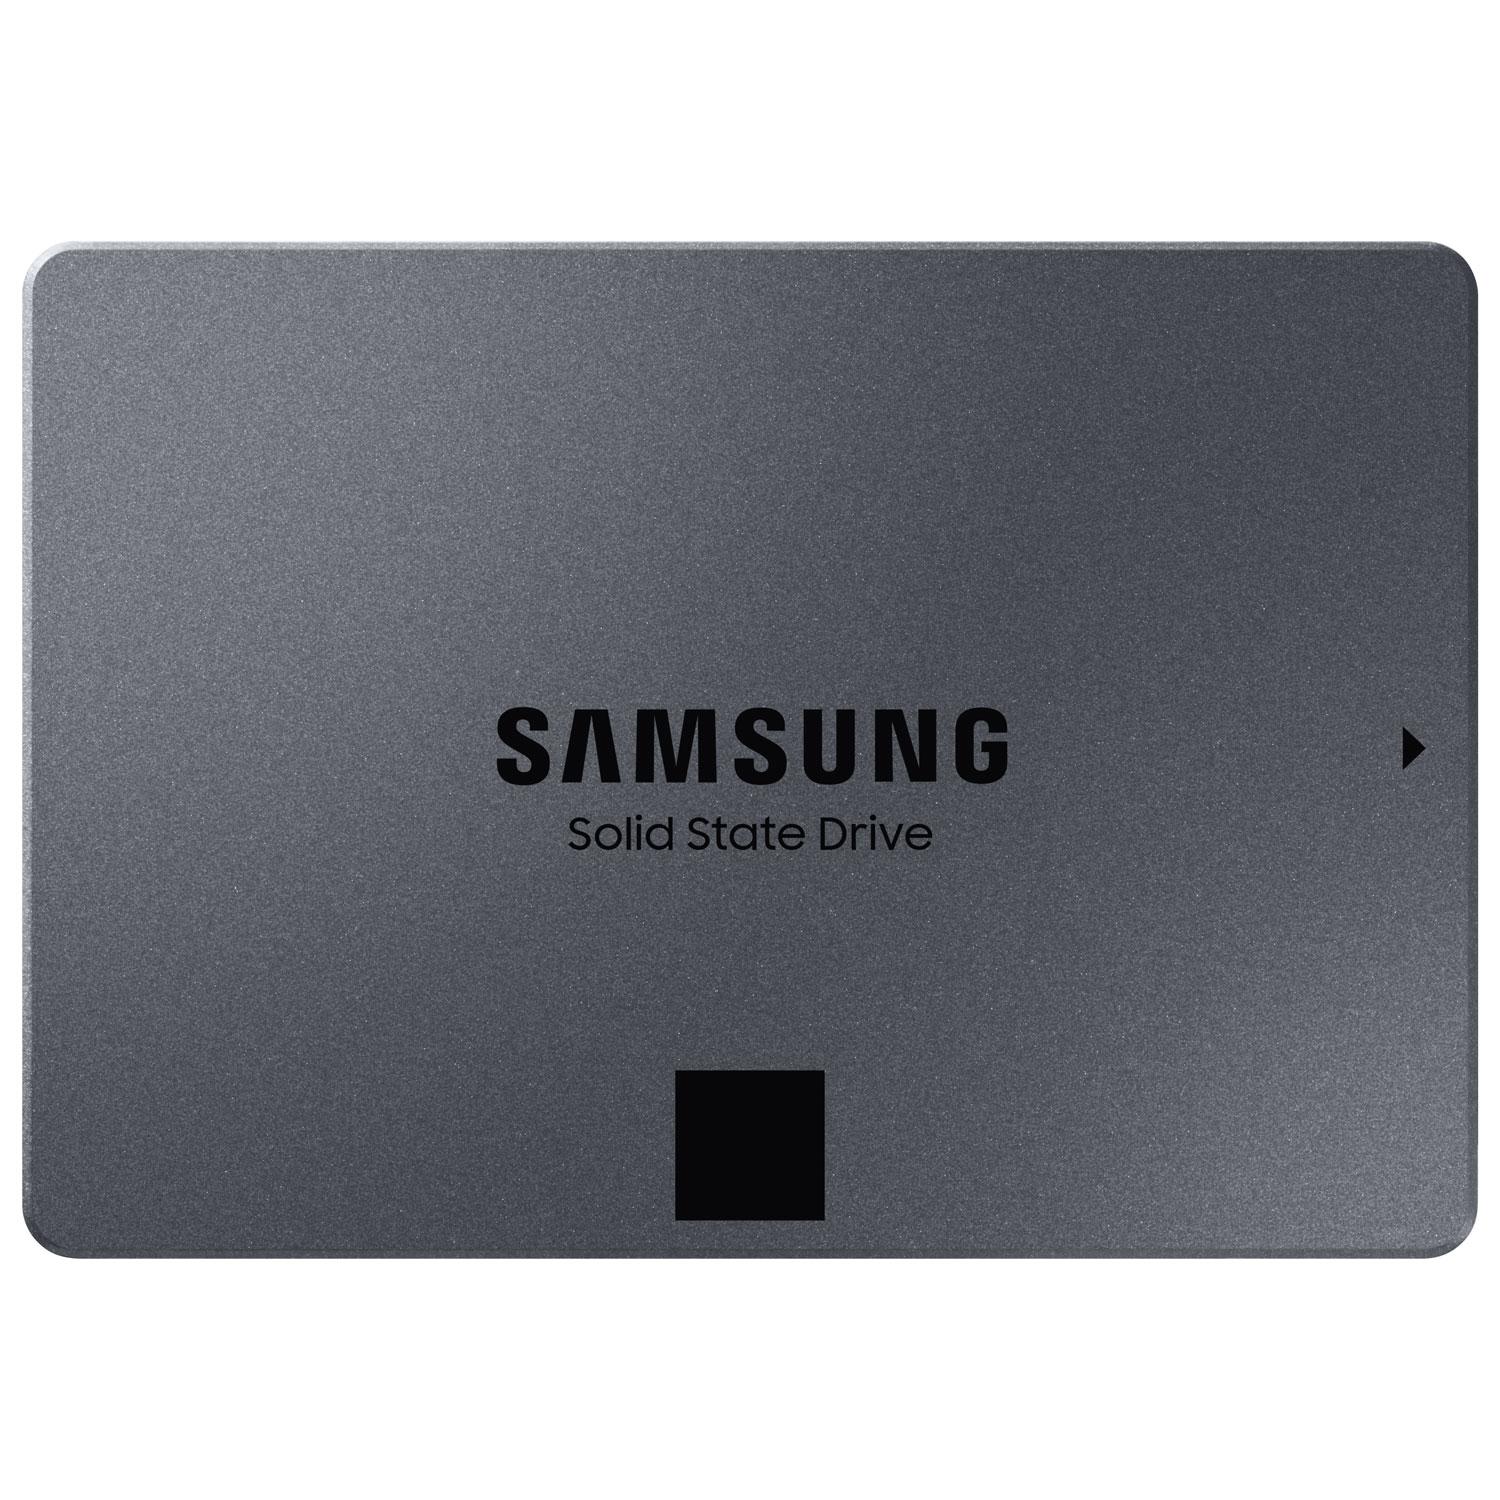 Samsung 870 QVO 1TB SATA III Internal Solid State Drive (MZ-77Q1T0B/AM)